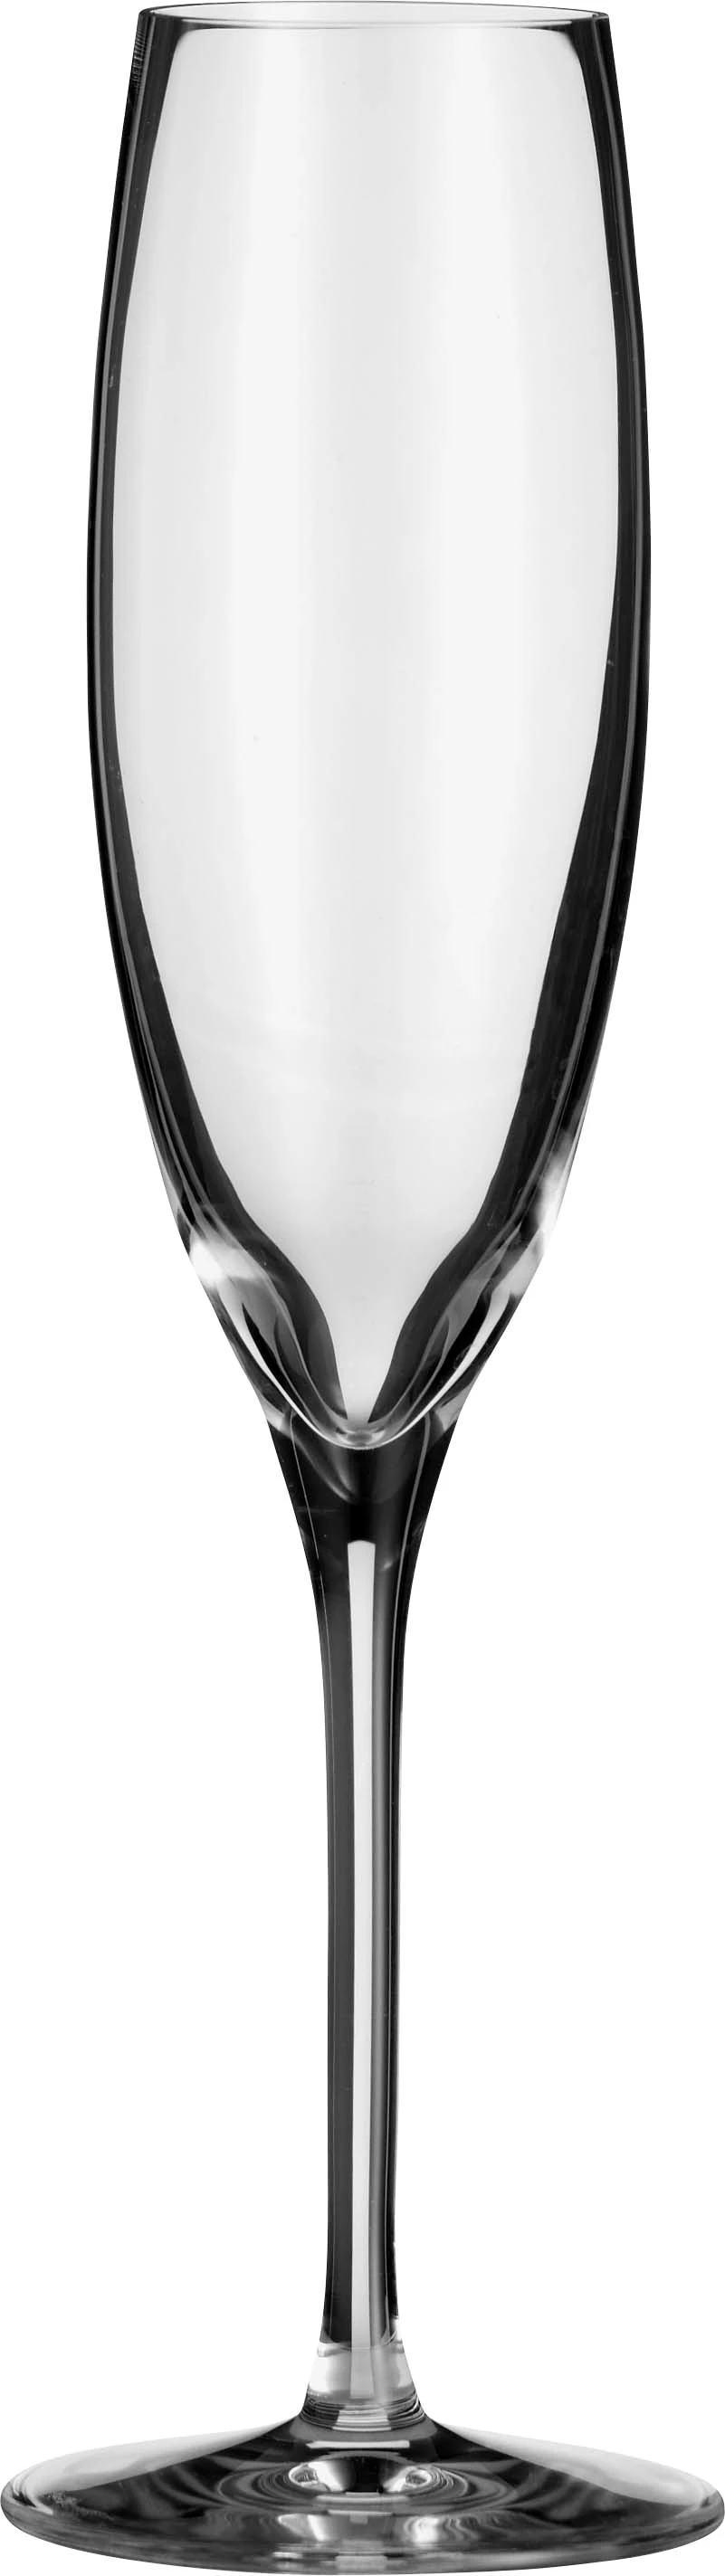 Zenz Penelope champagneglas, 17 cl, H22,4 cm